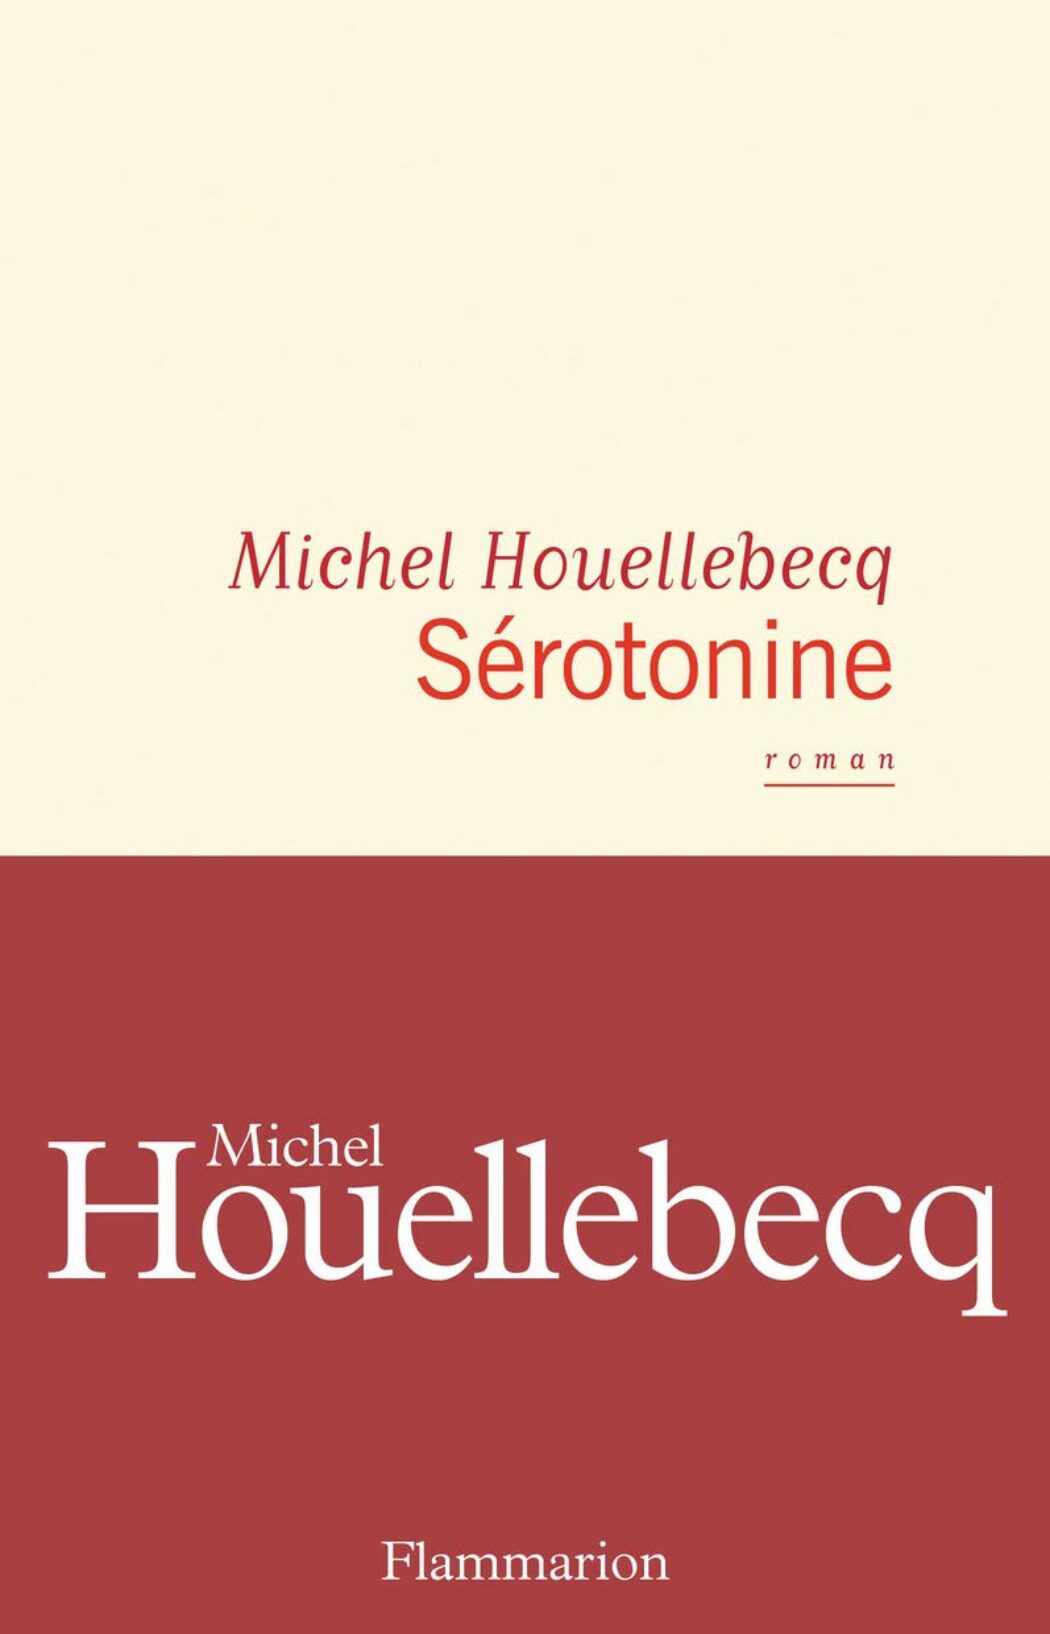 Le roman de Michel Houellebecq : Sérotonine et Gilets jaunes